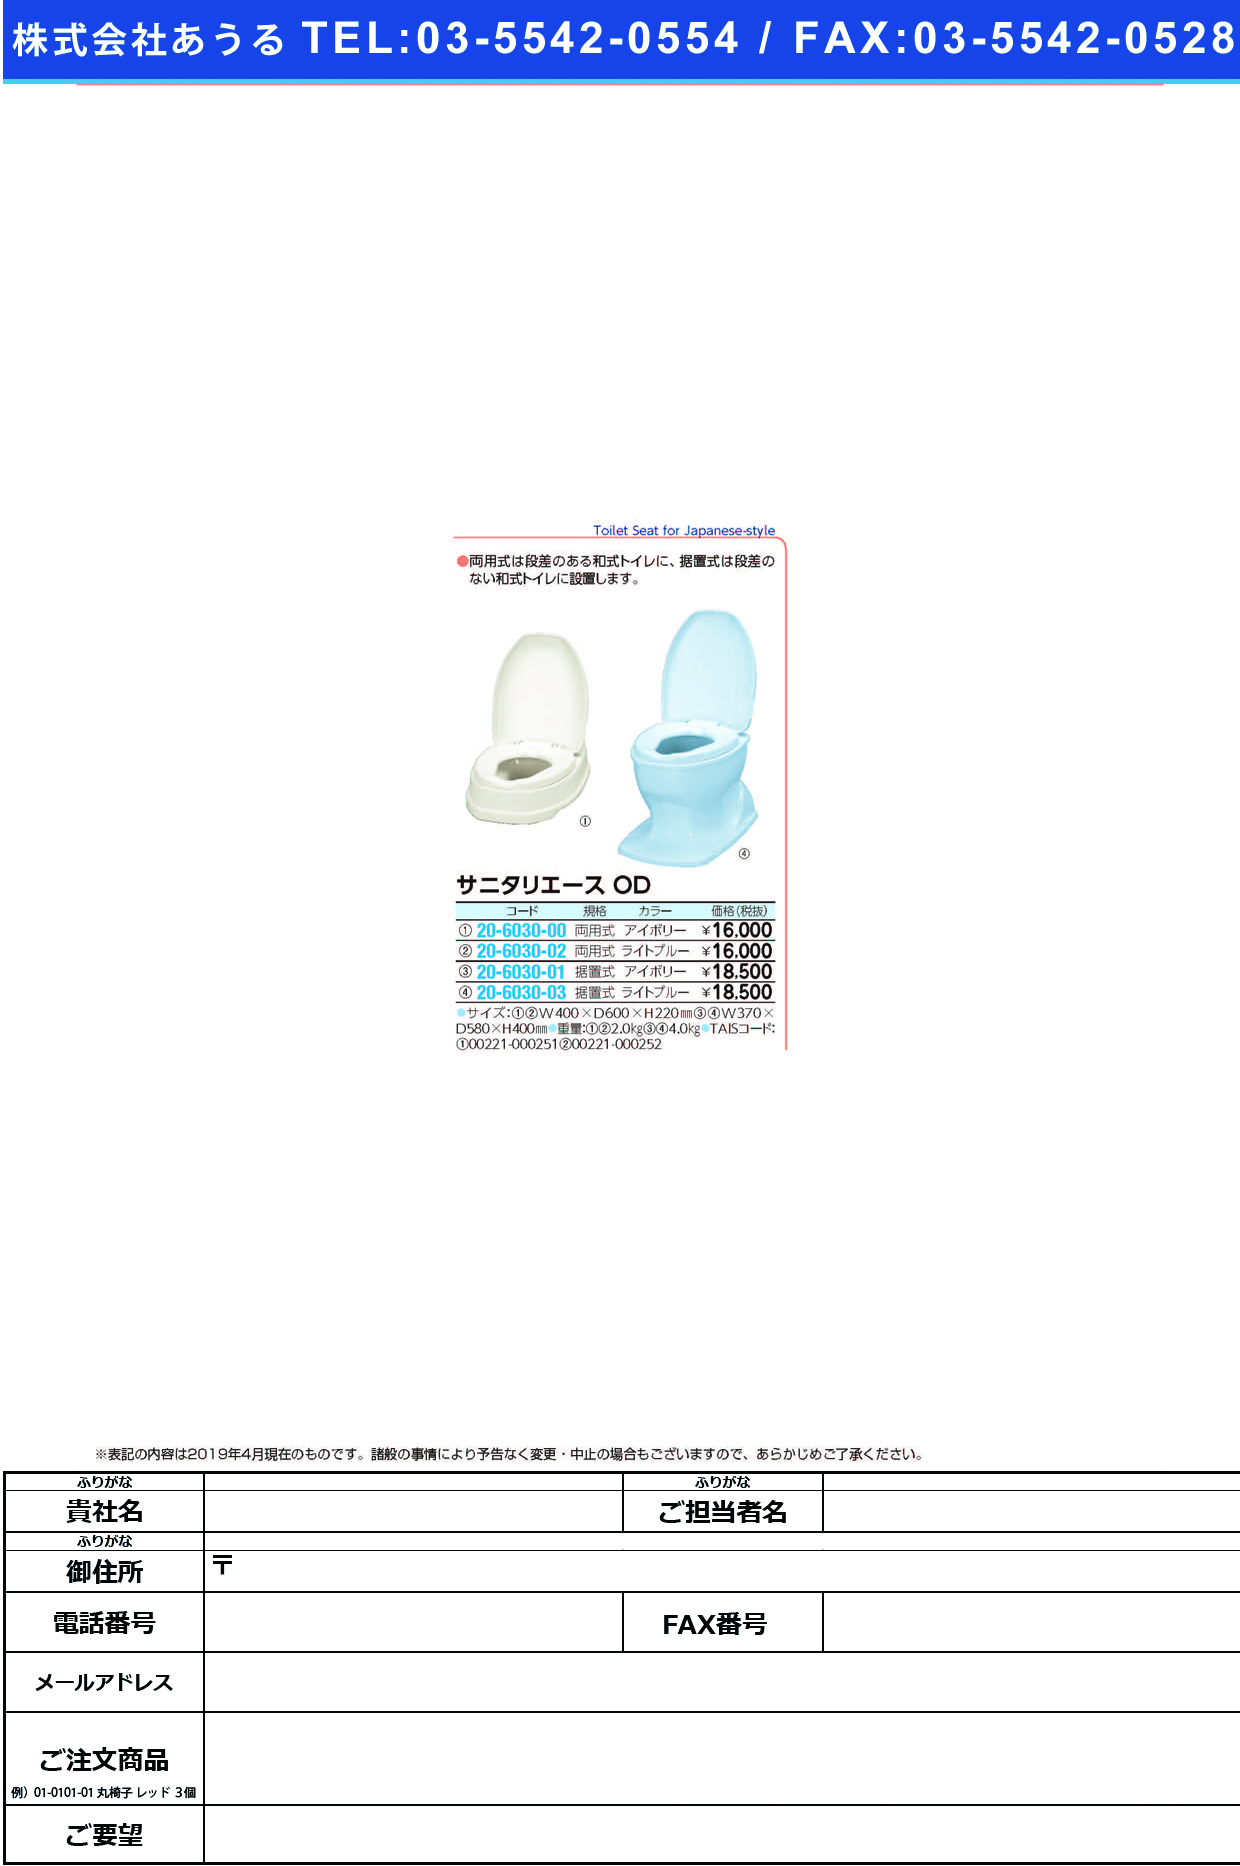 (20-6030-00)サニタリエースＯＤ両用式 533-303(ｱｲﾎﾞﾘｰ) ｻﾆﾀﾘｴｰｽODﾘｮｳﾖｳｼｷ(アロン化成)【1台単位】【2019年カタログ商品】